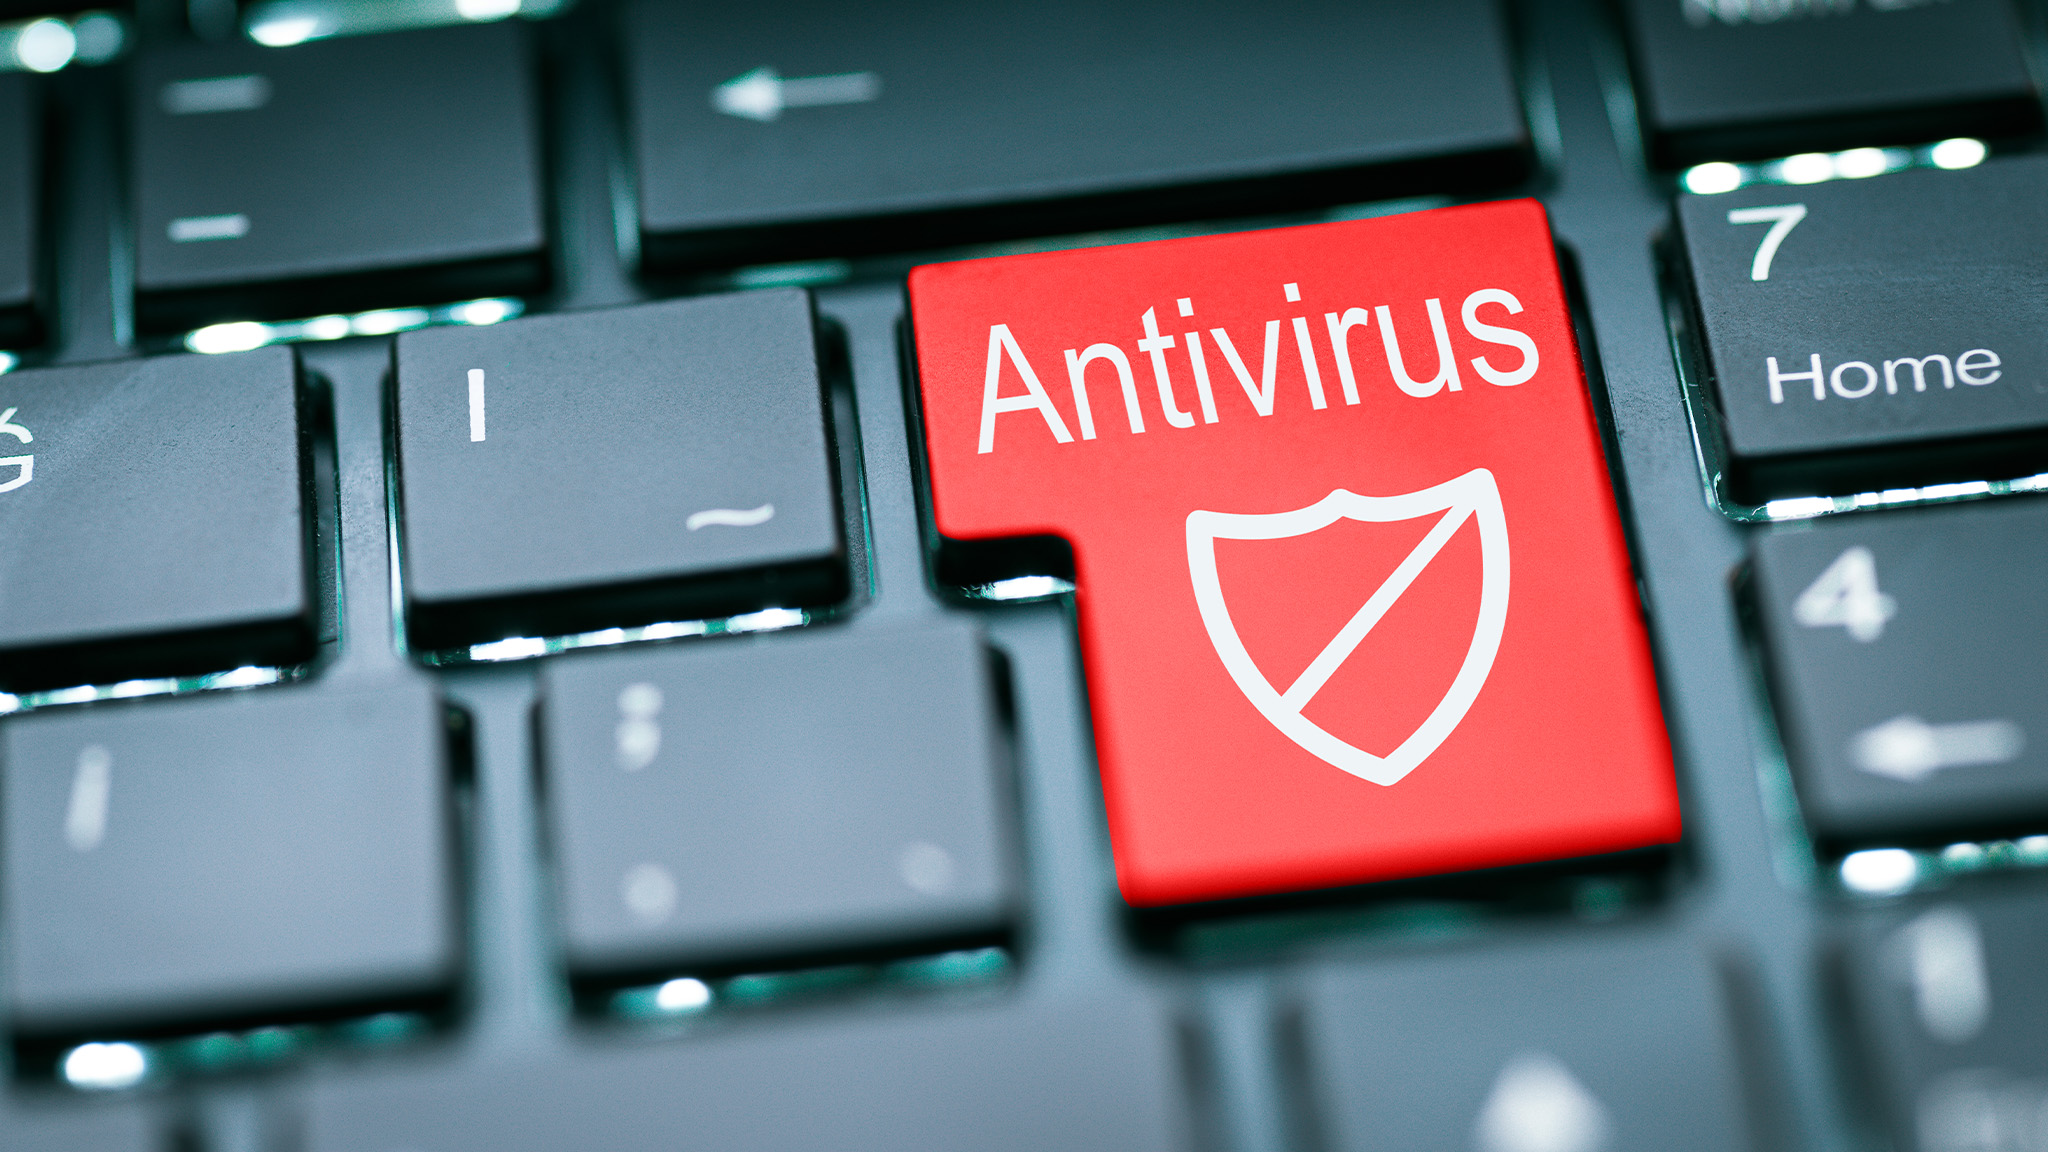 Verwenden Sie ein aktuelles Antivirenprogramm, um Ihren Computer auf Malware zu scannen und zu bereinigen.
Führen Sie zusätzlich einen Malware-Scan mit einem speziellen Anti-Malware-Tool durch.